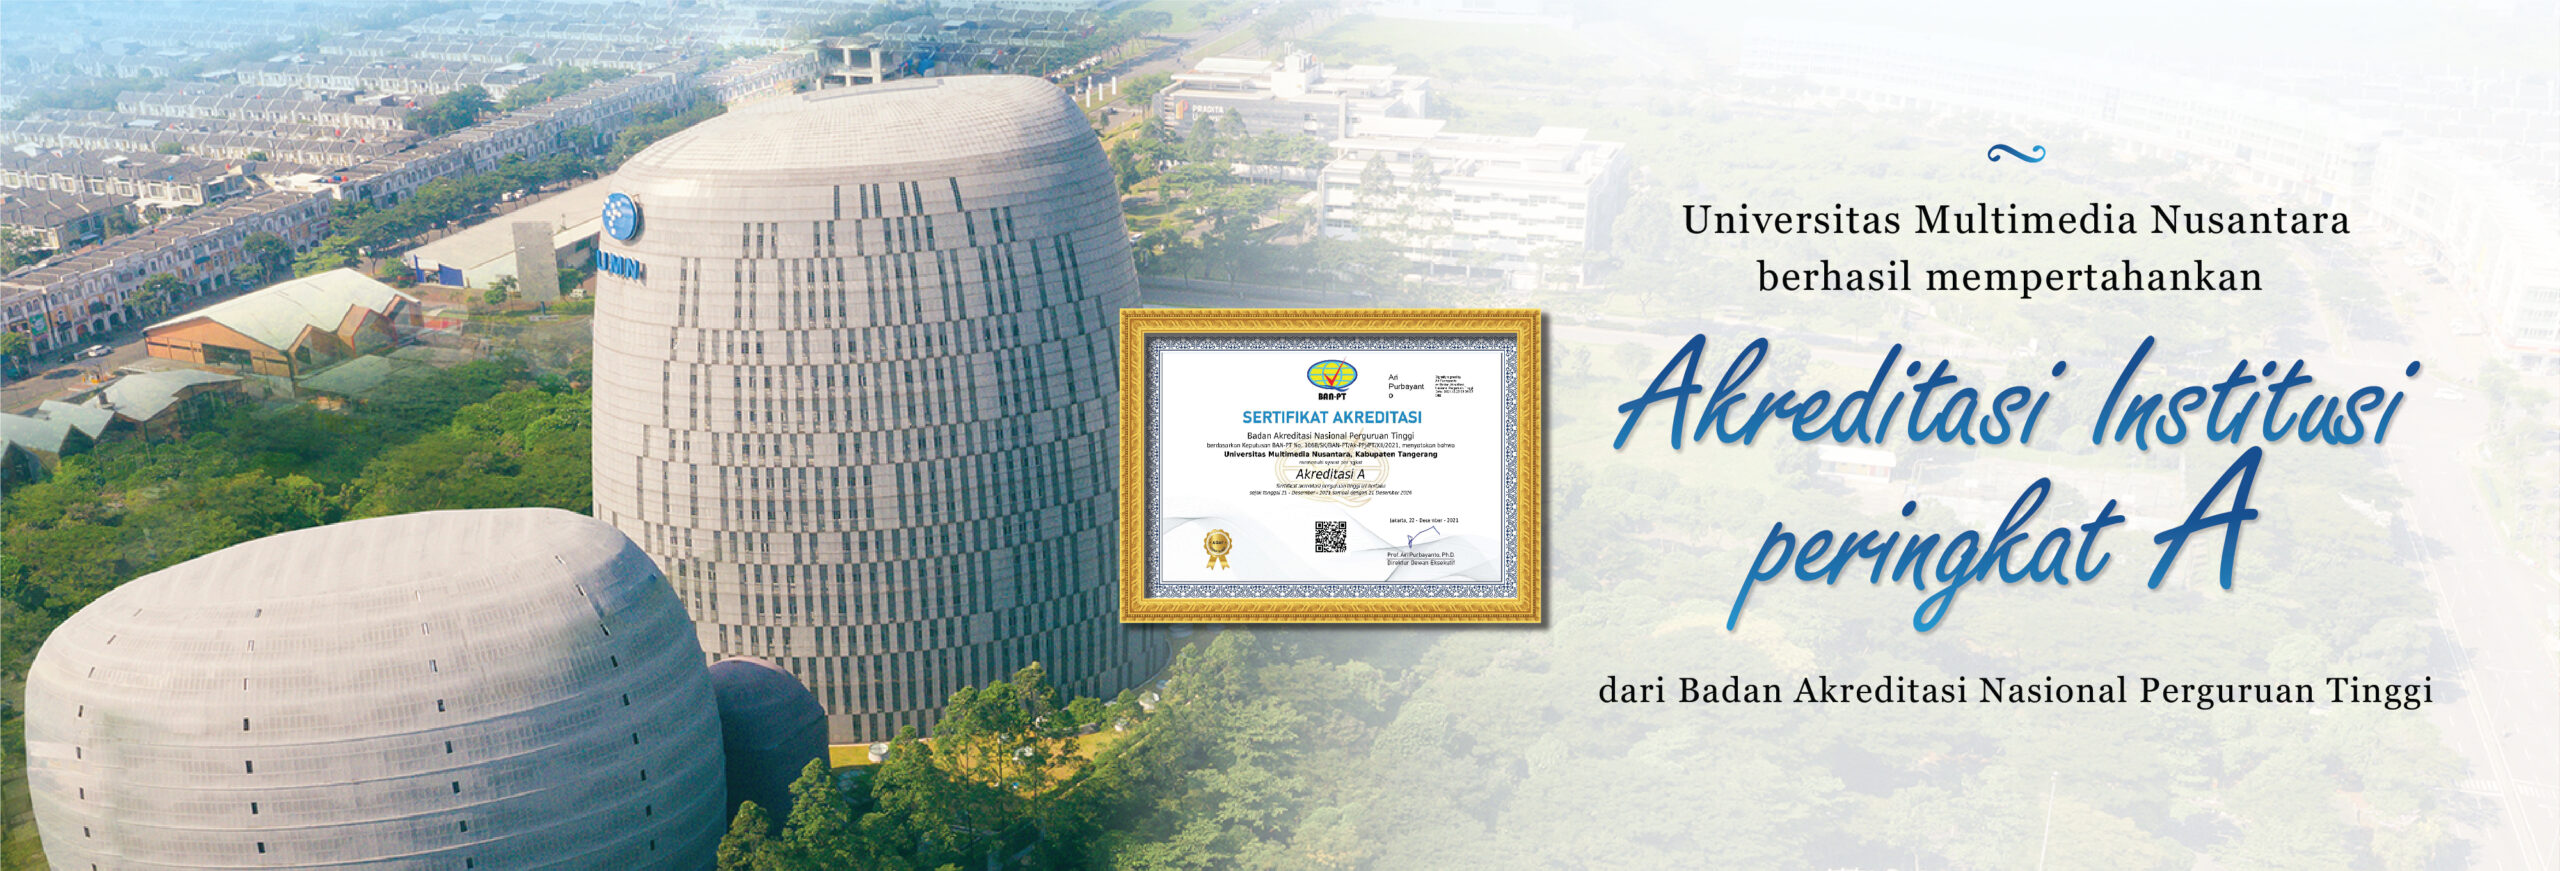 Universitas Multimedia Nusantara Kembali Meraih Akreditasi Institusi A dari BAN-PT